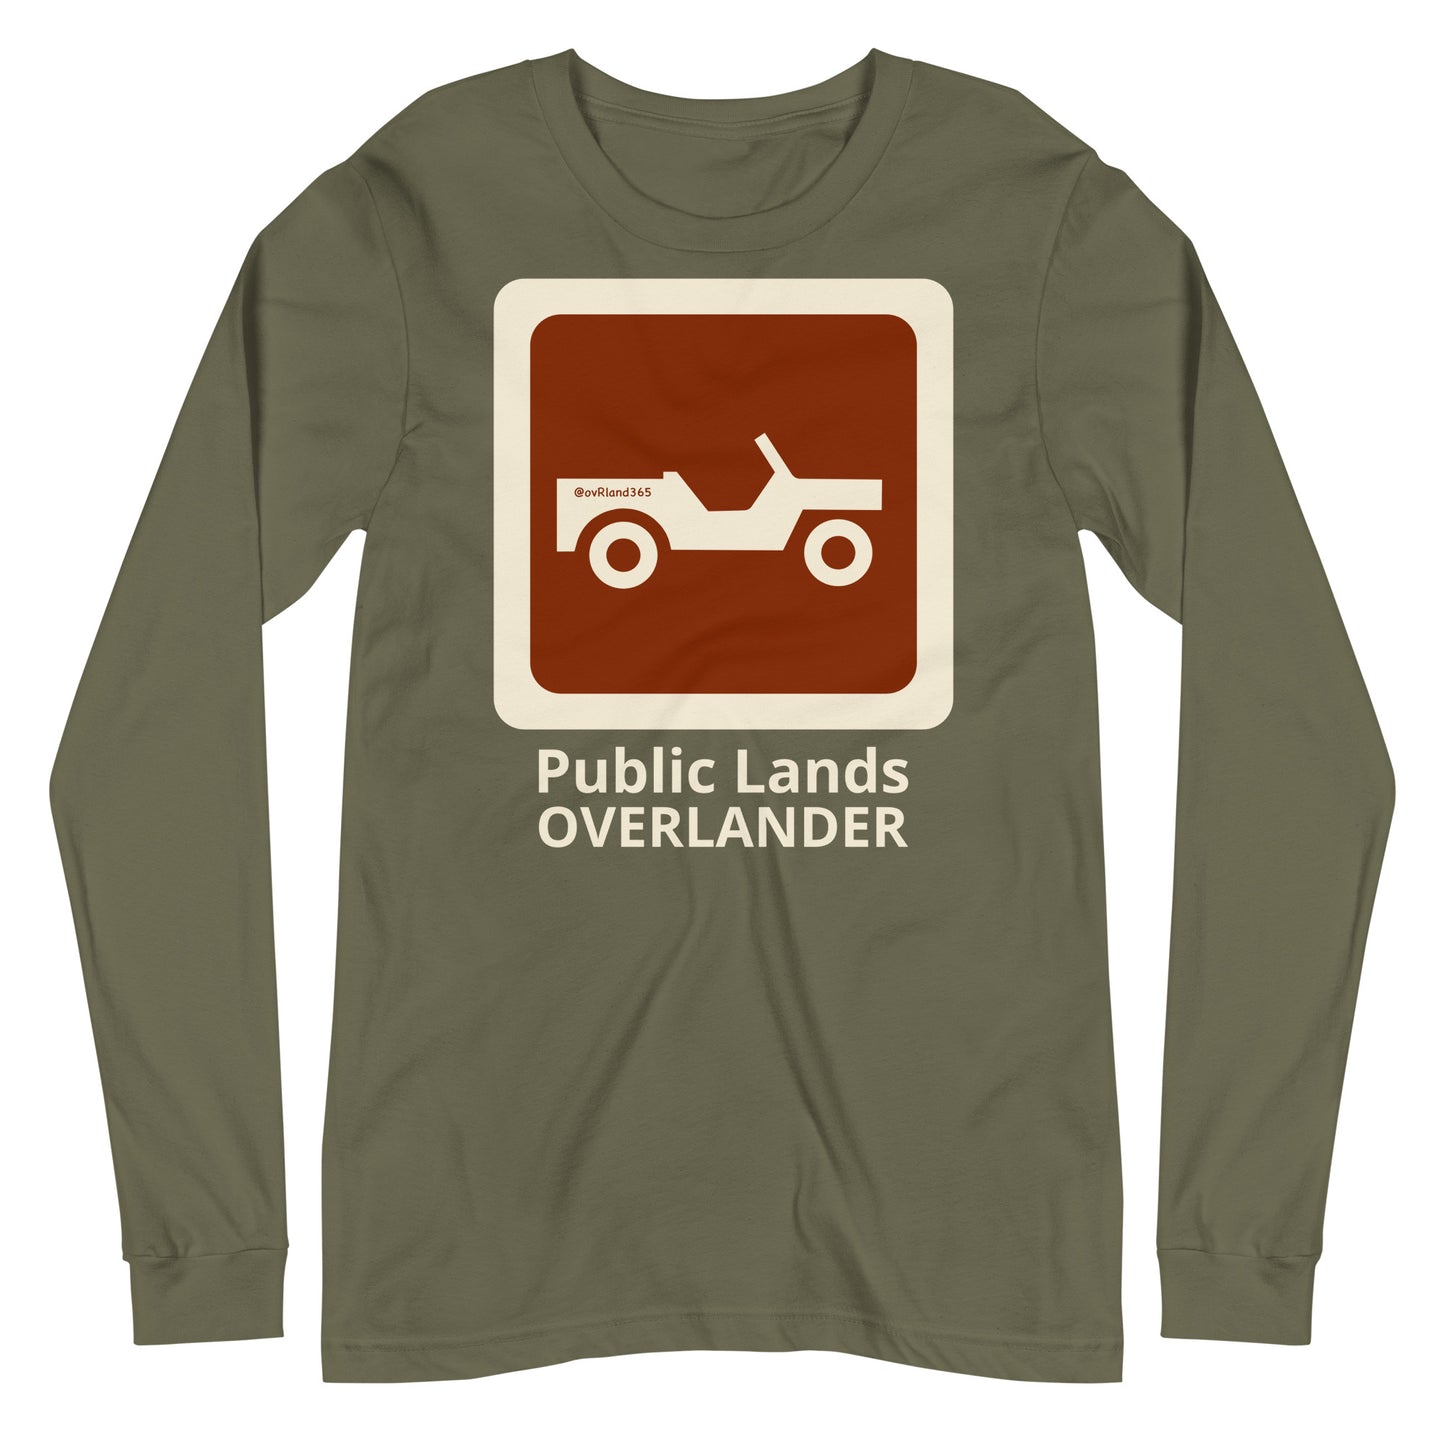 Green Public Lands OVERLANDER long-sleeve. overland365.com